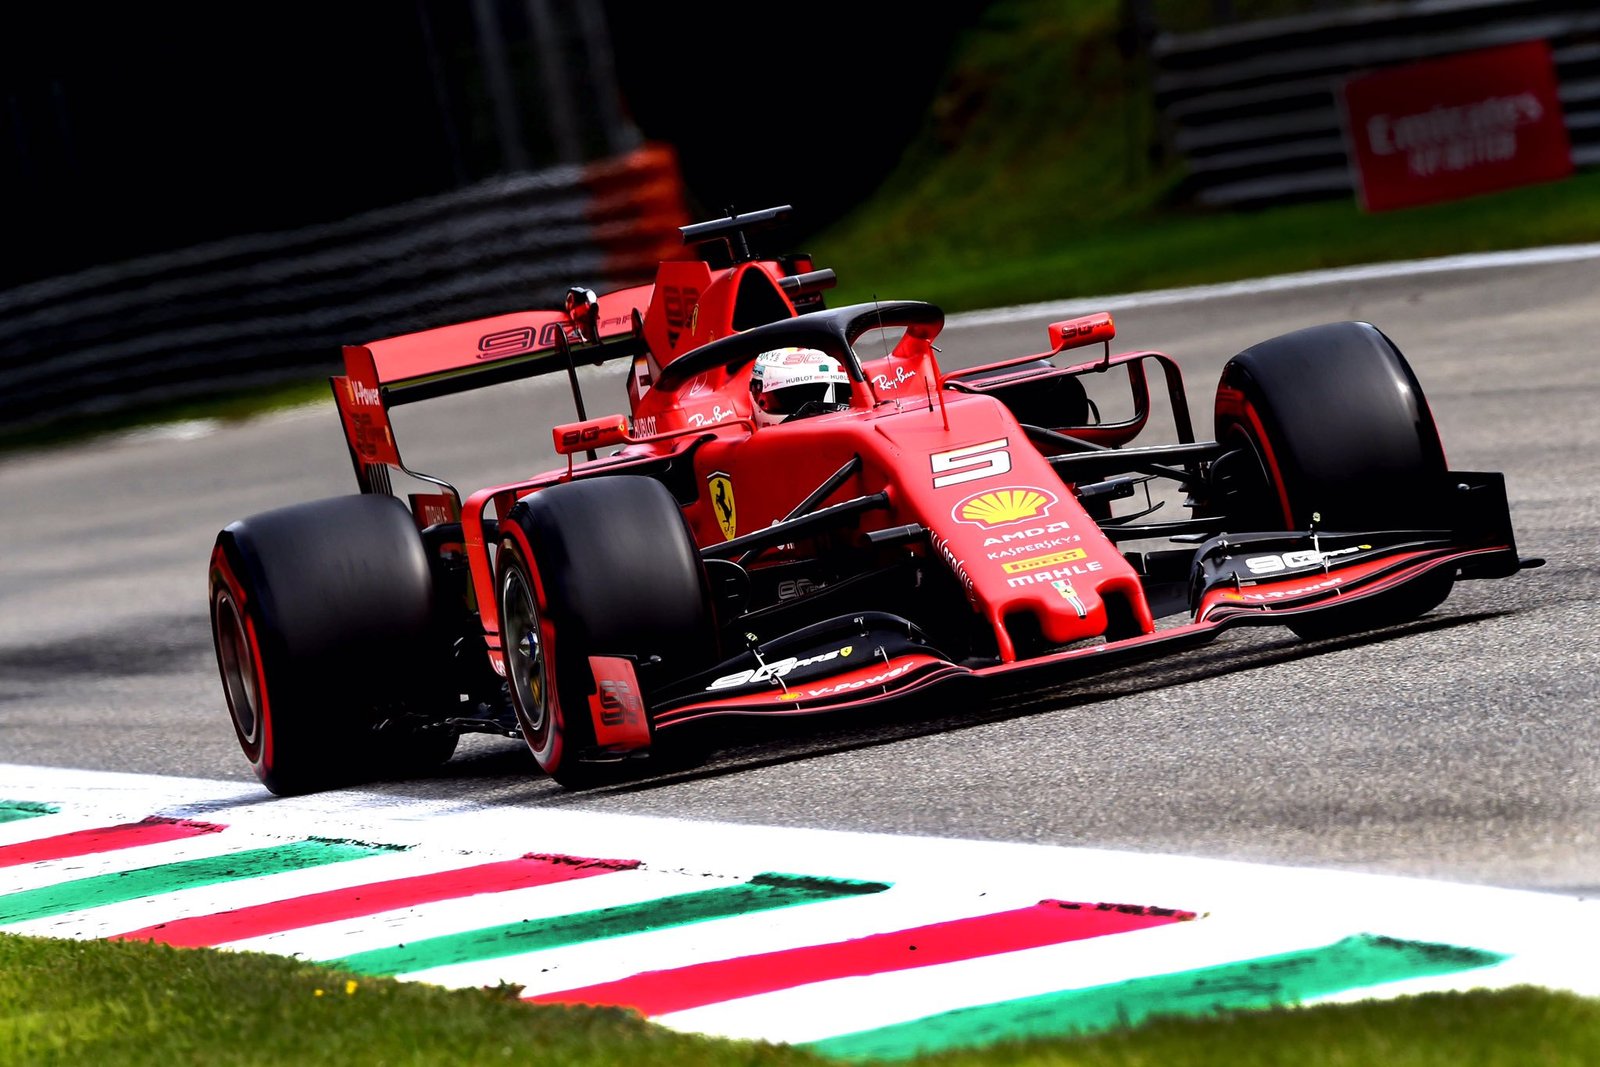 Foto de TL3 Itália – Sebastian Vettel confirma domínio da Ferrari, mas proximidade entre os pilotos chama atenção